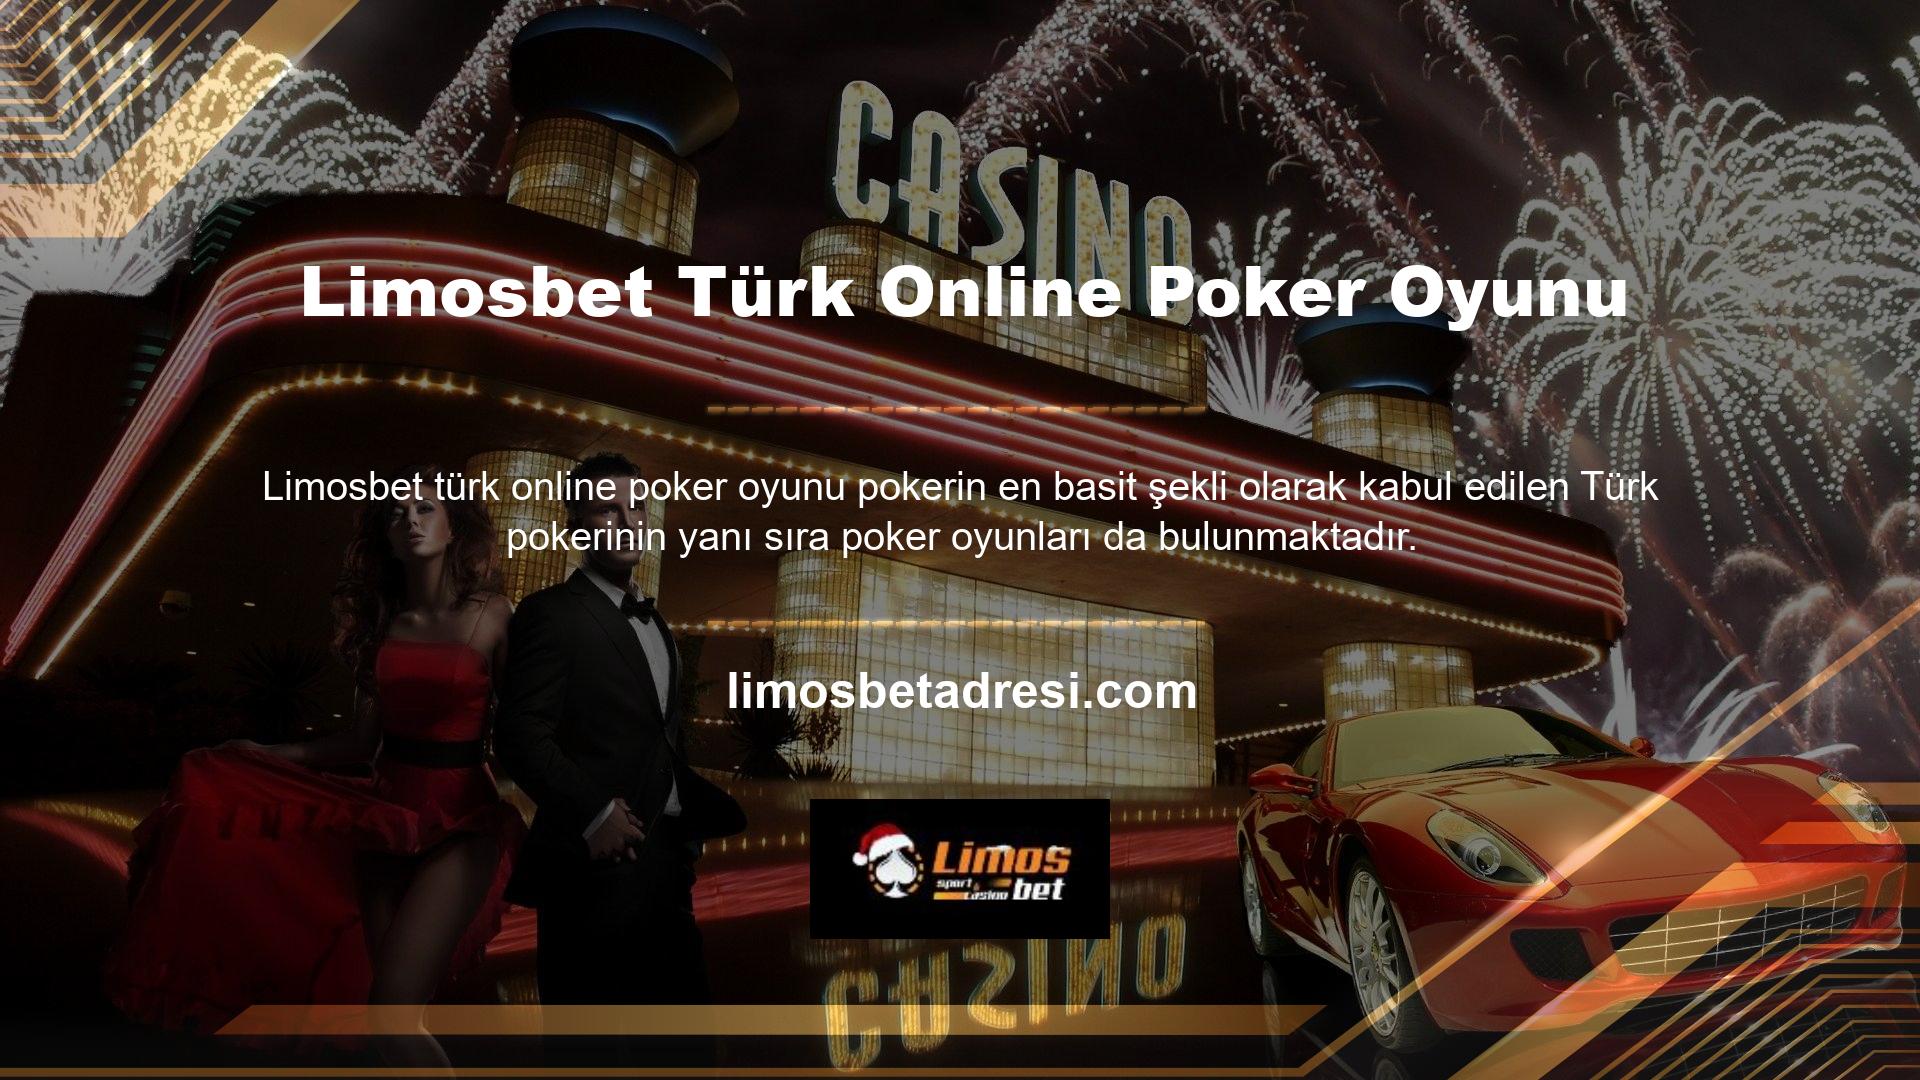 Texas Hold'em gibi popüler oyunlar Türkler ve diğer ülkeler tarafından seviliyor